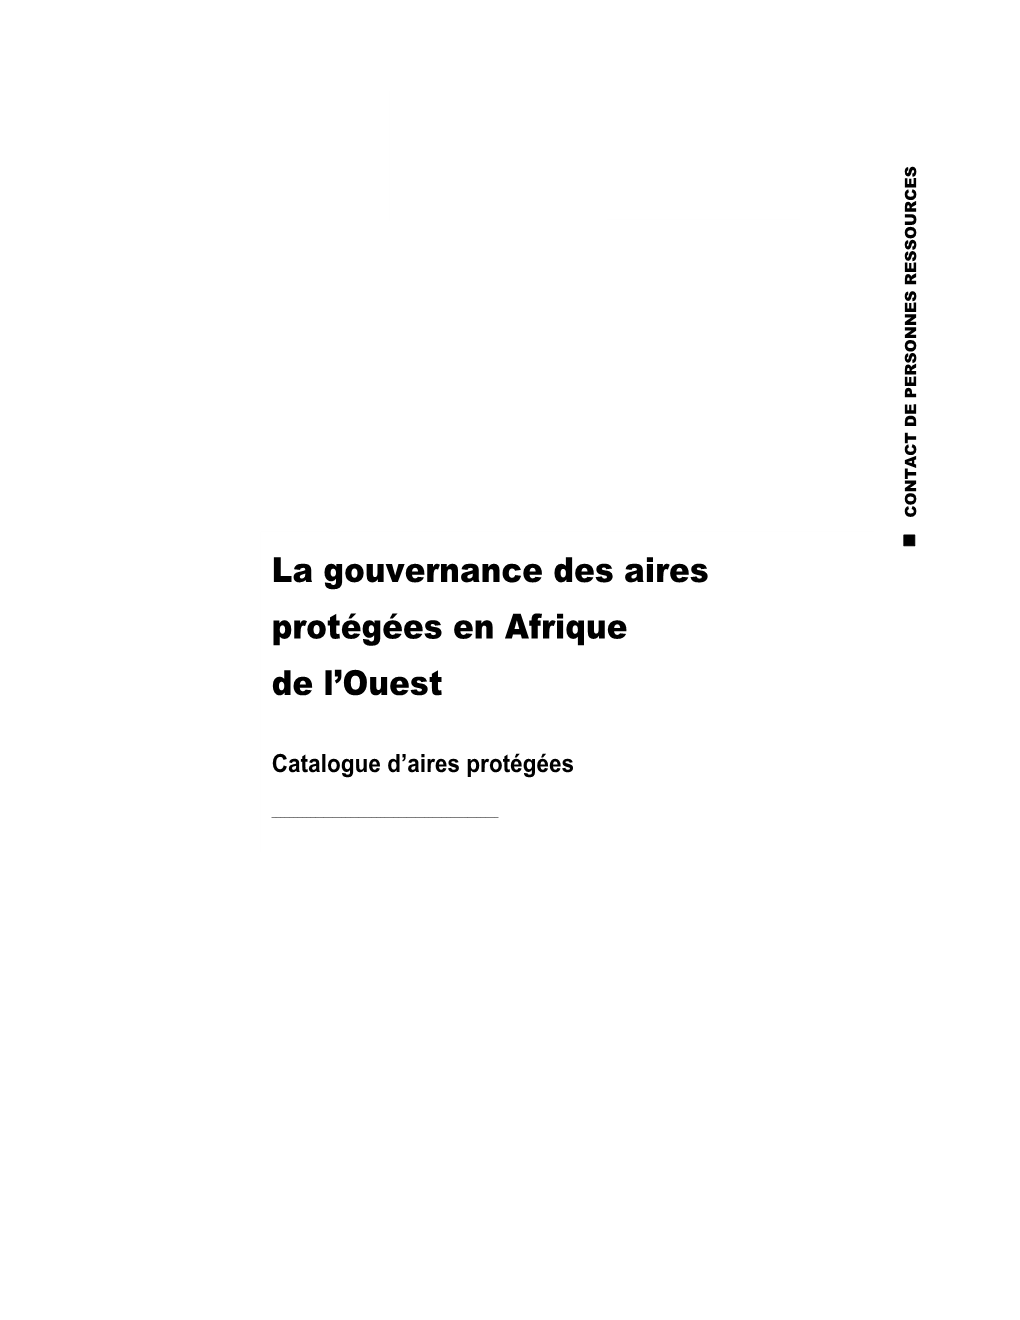 La Gouvernance Des Aires Protégées En Afrique De L'ouest